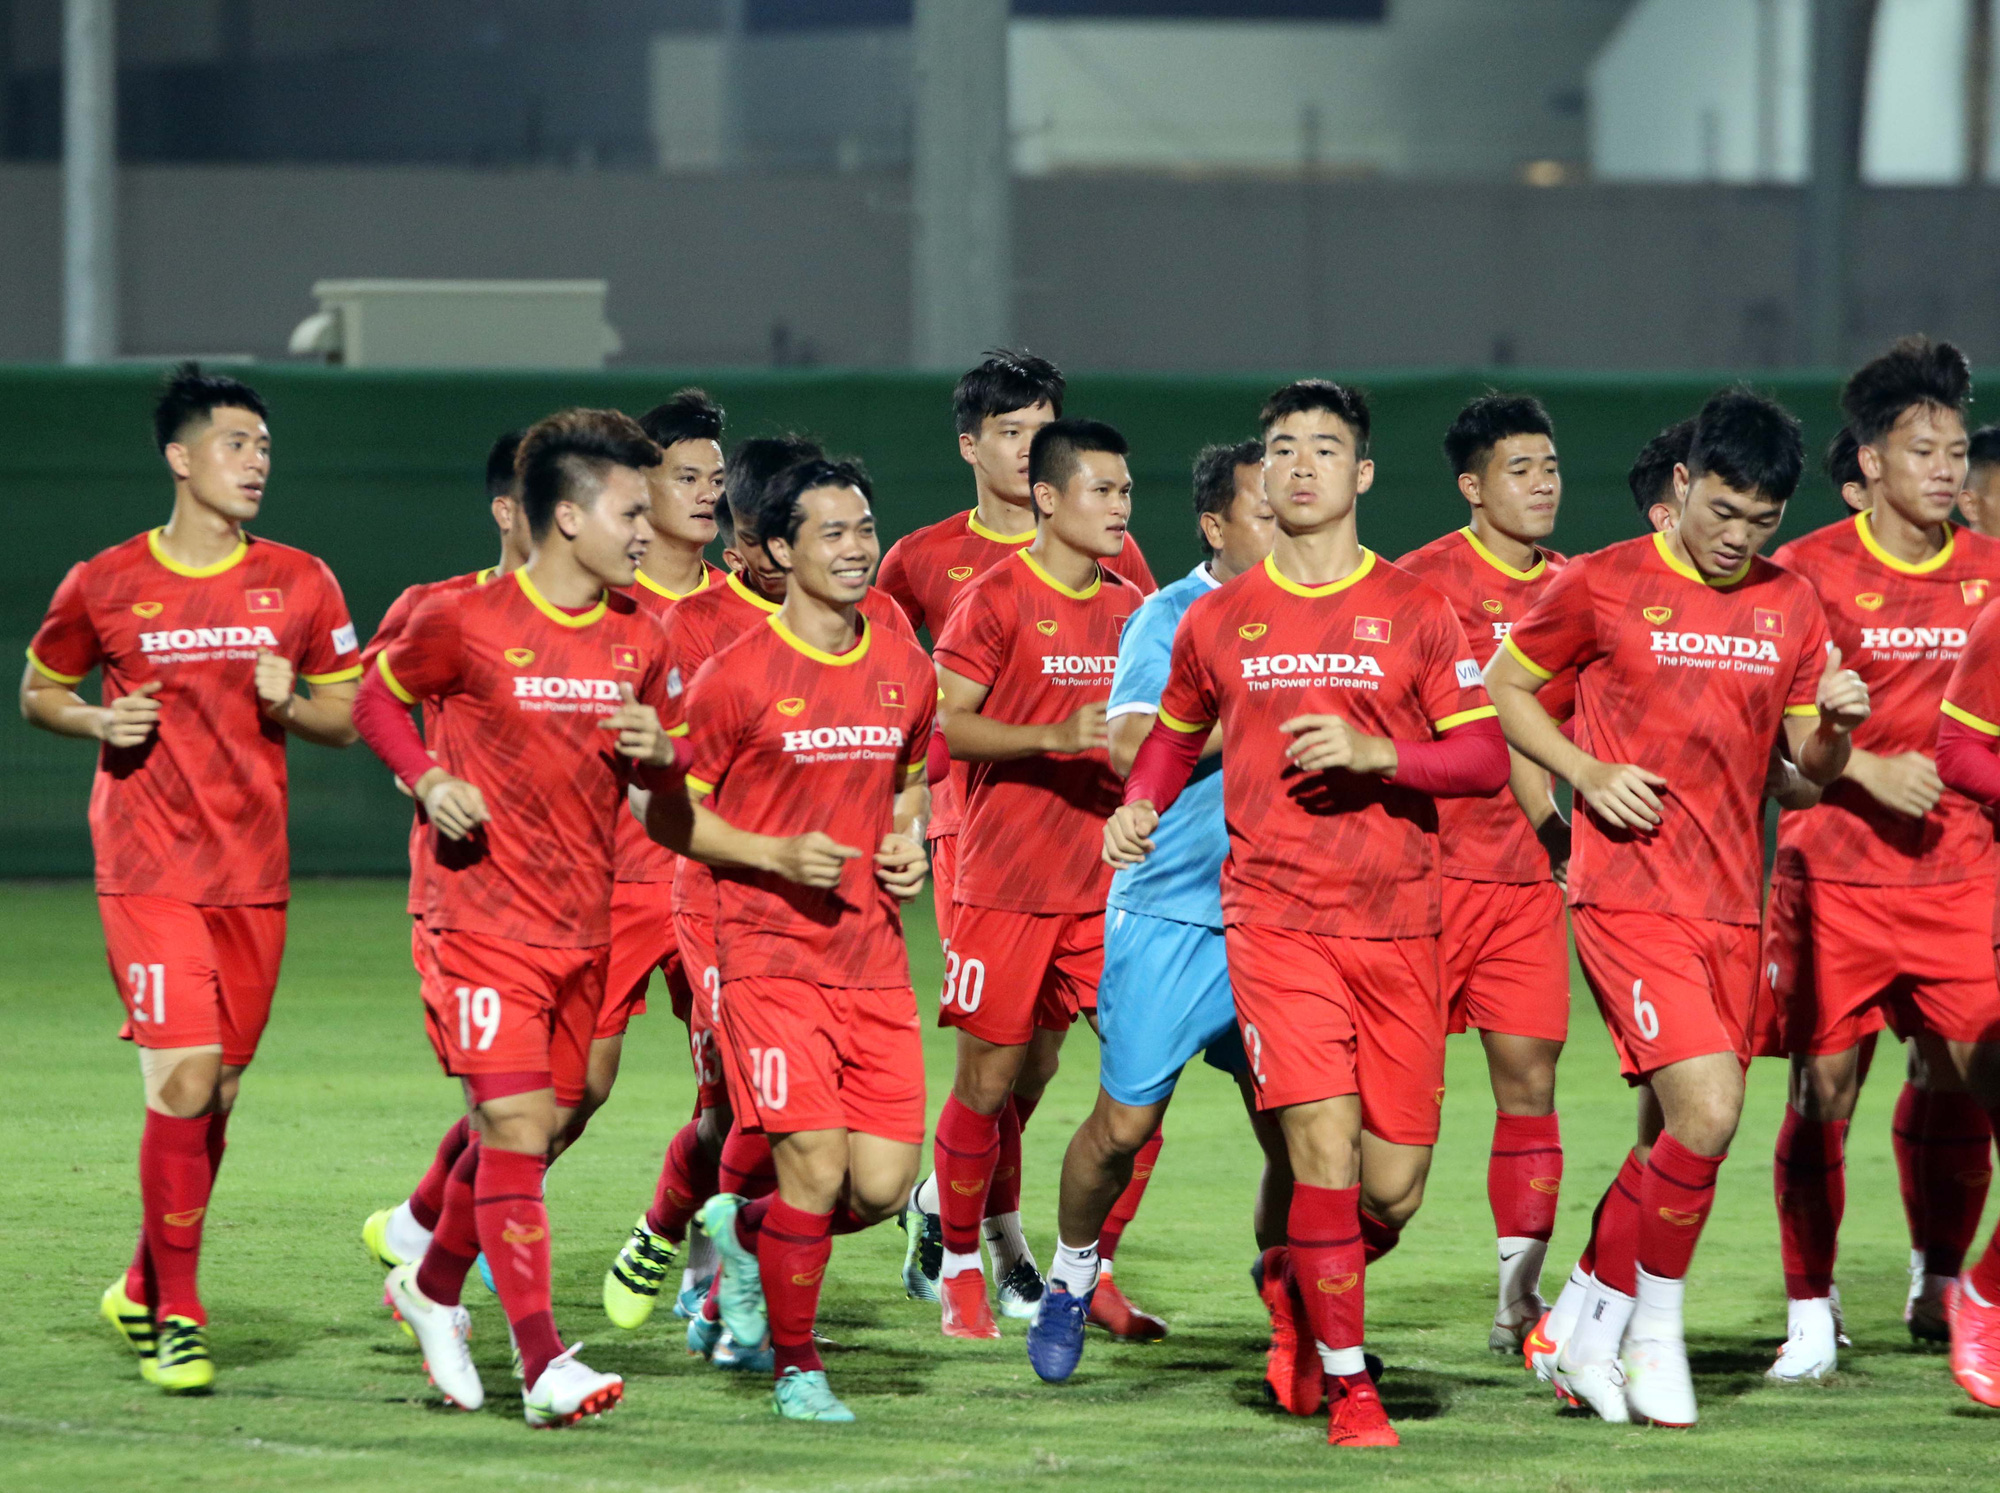 Cầu thủ Việt Nam hứng khởi với các bài tập dưới thời tiết khắc nghiệt ở UAE - Ảnh 3.